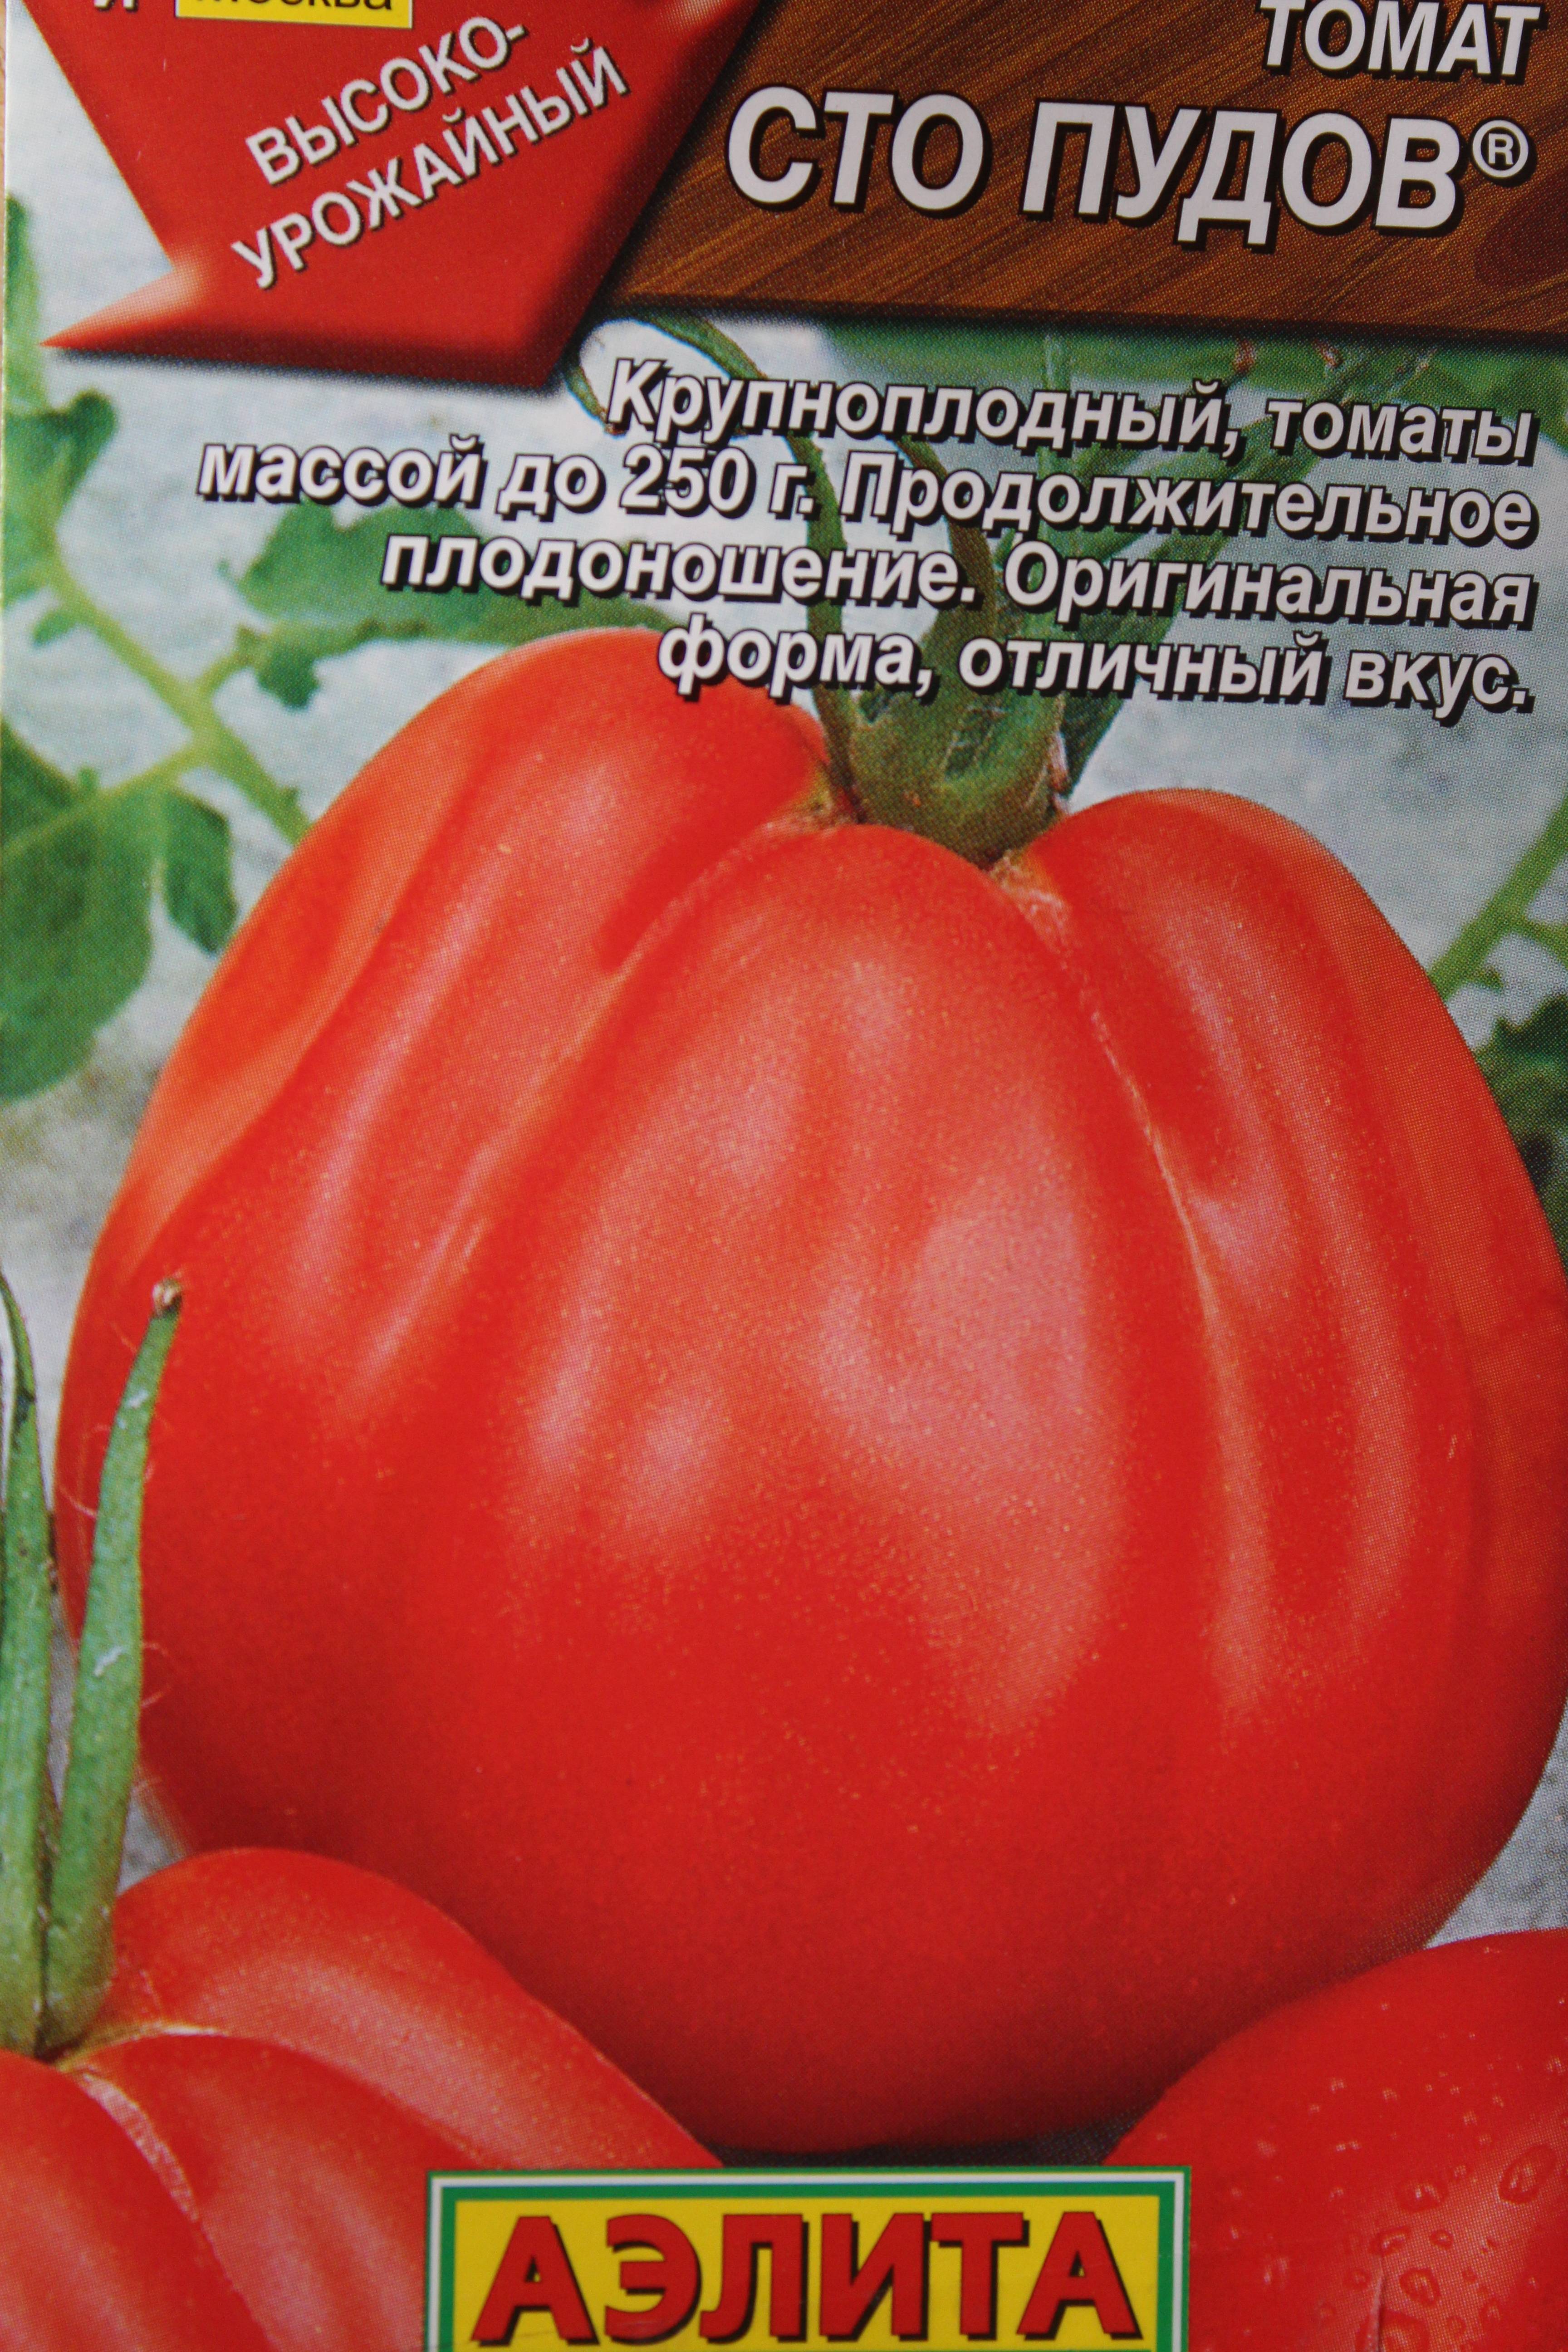 «мясистый красавец» — нарядный томат с высокой урожайностью